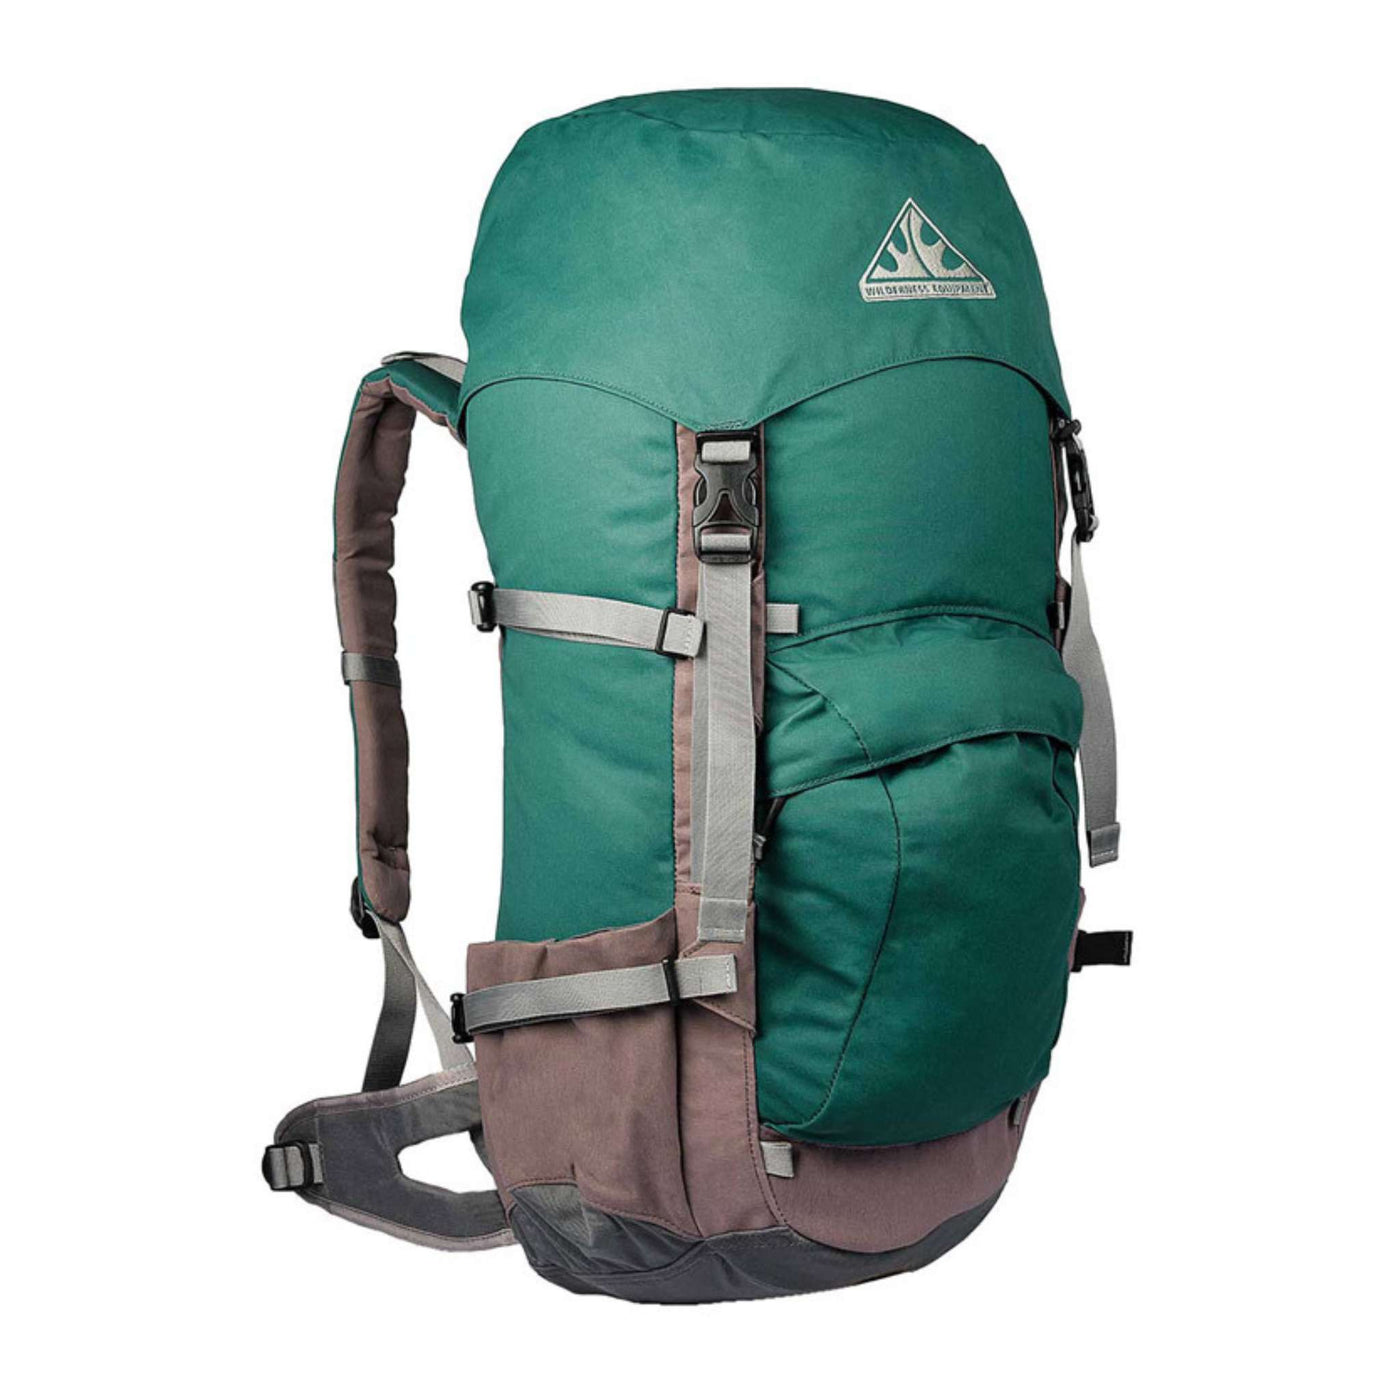 Wilderness Equipment Contour Daypack | NZ Daypack and Hiking Packs | Wilderness Equipment NZ | Further Faster Christchurch NZ #teal